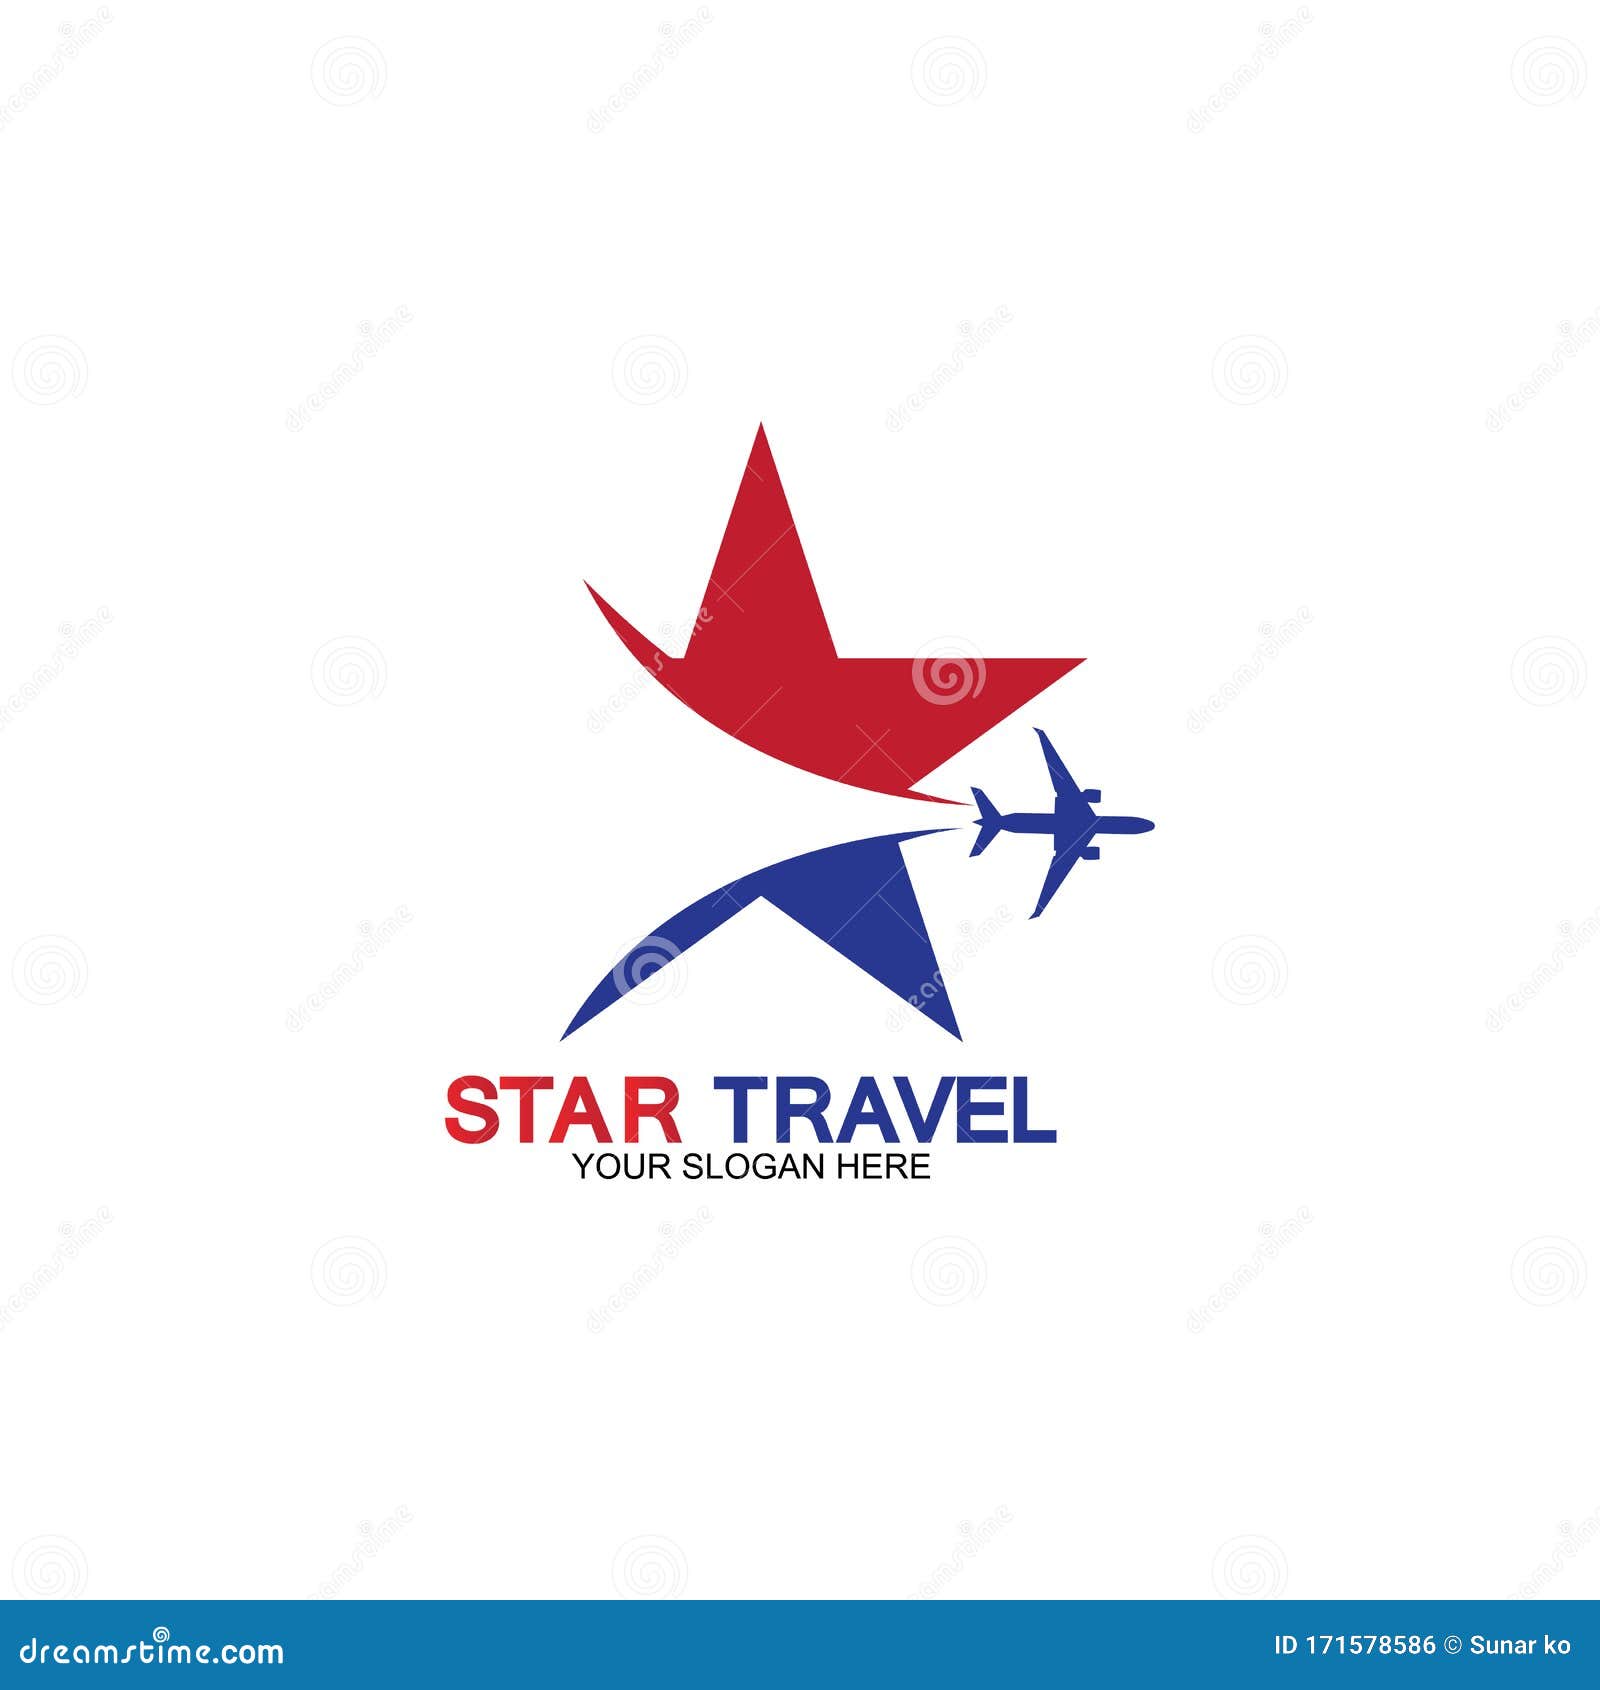 star travel agency orlando